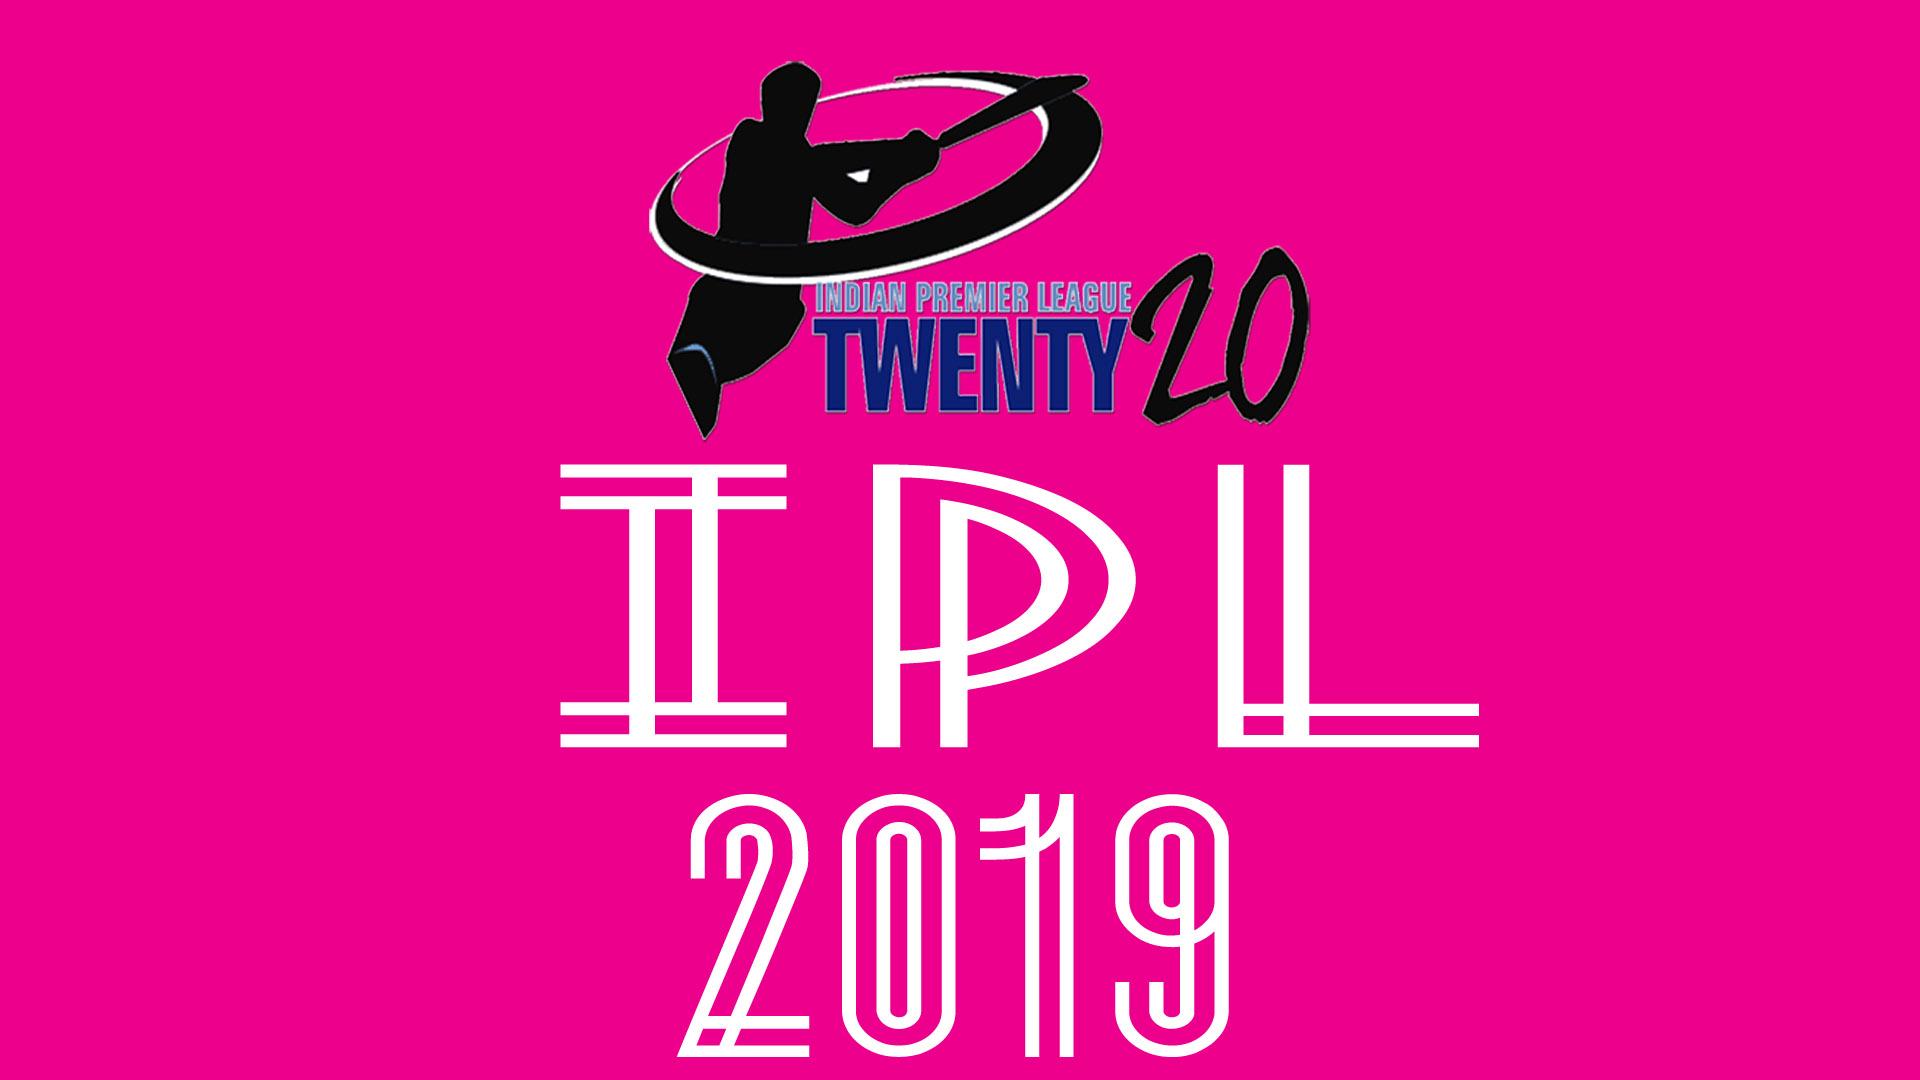 IPL T20 2019 HD Wallpaper Free Download